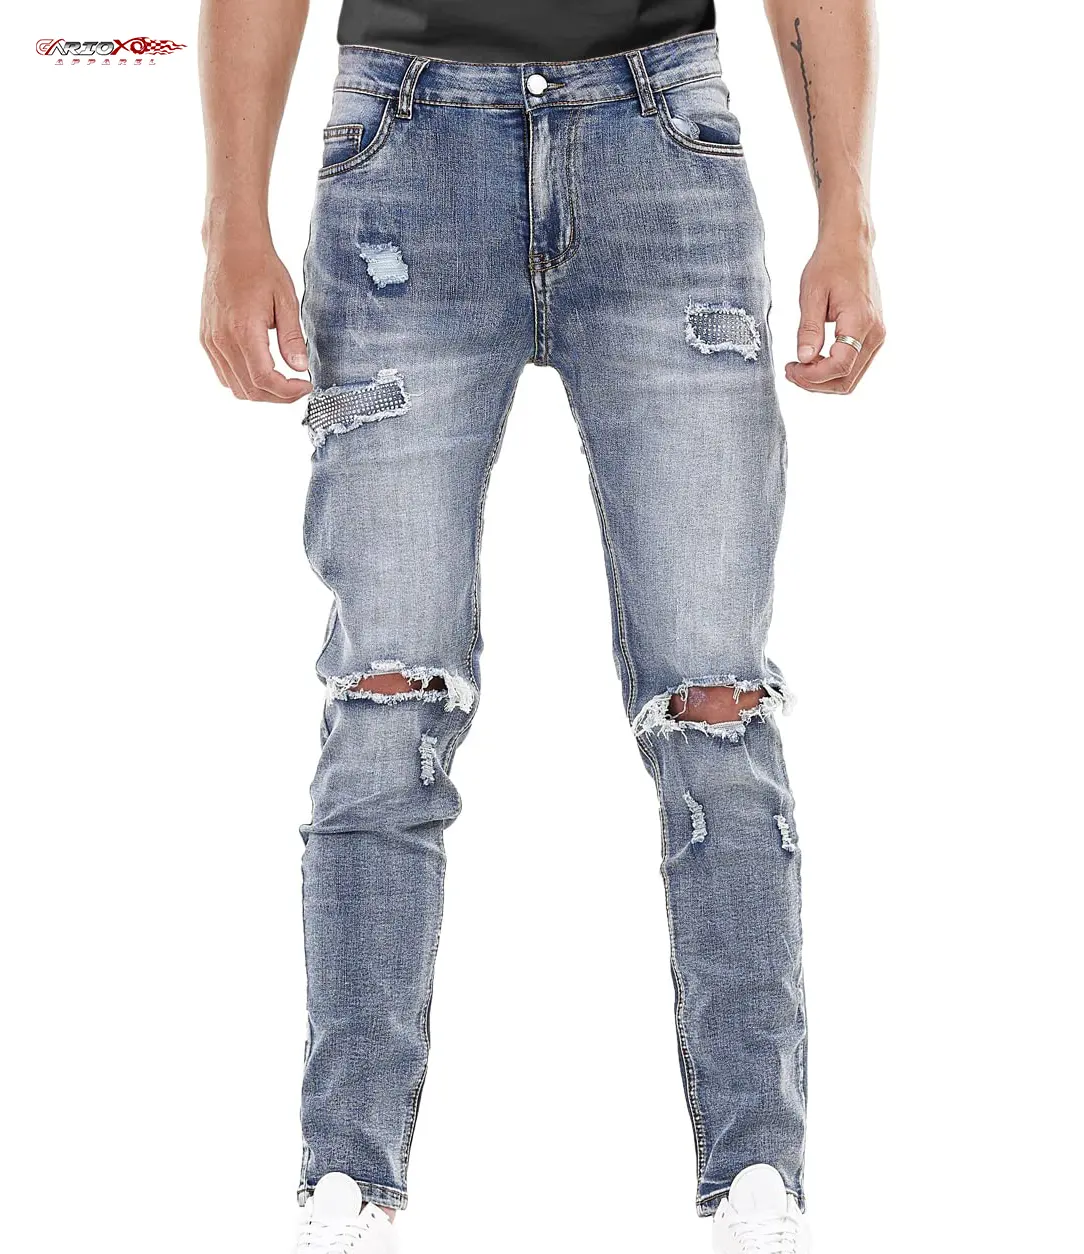 Rất căng Skinny Jeans cho nam giới đàn hồi cung cấp thoải mái di động mà không cần bất kỳ hạn chế bị phá hủy jeans thẳng chân